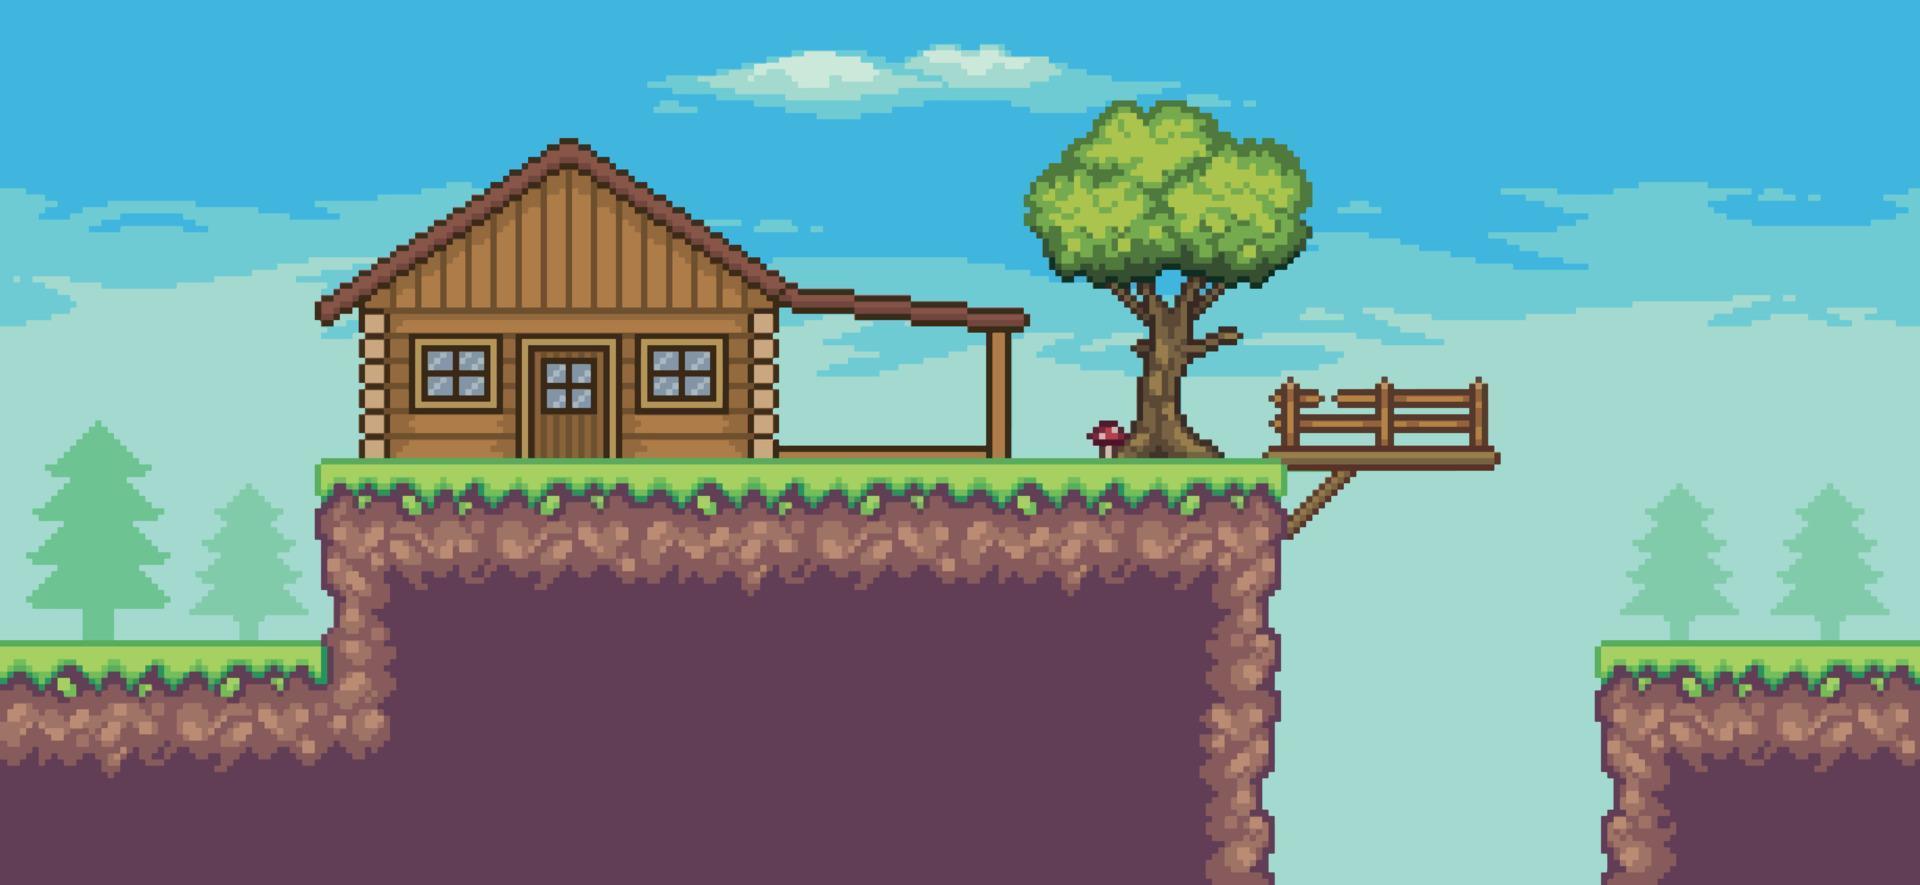 scène de jeu d'arcade pixel art avec maison en bois, arbres, clôture, pont et nuages fond 8bit vecteur